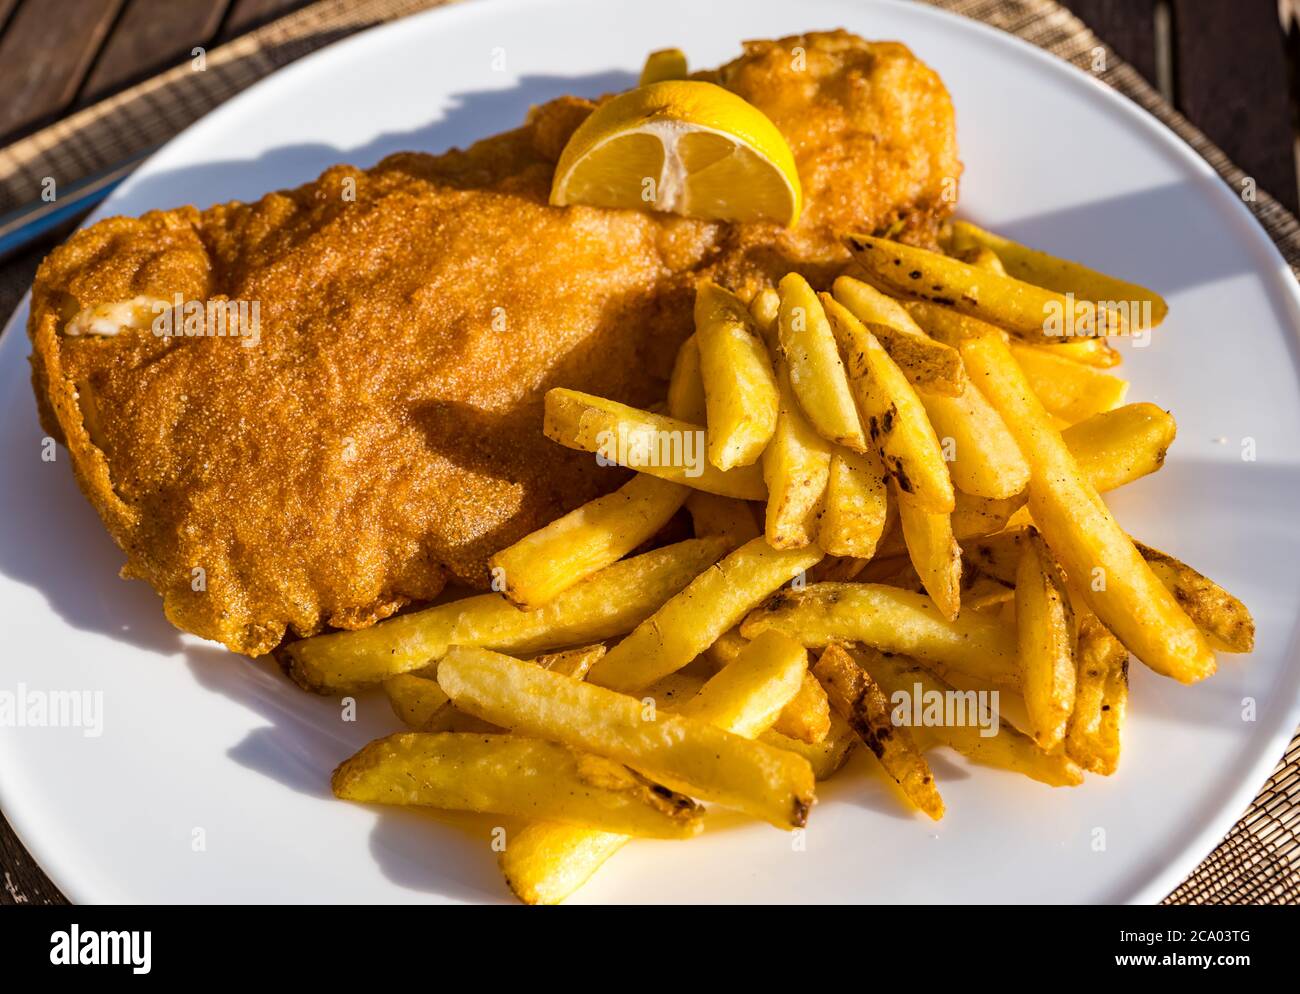 Poisson et frites d'aiglefin ou dîner de poisson sur l'assiette en été ensoleillé avec citron, Écosse, Royaume-Uni Banque D'Images